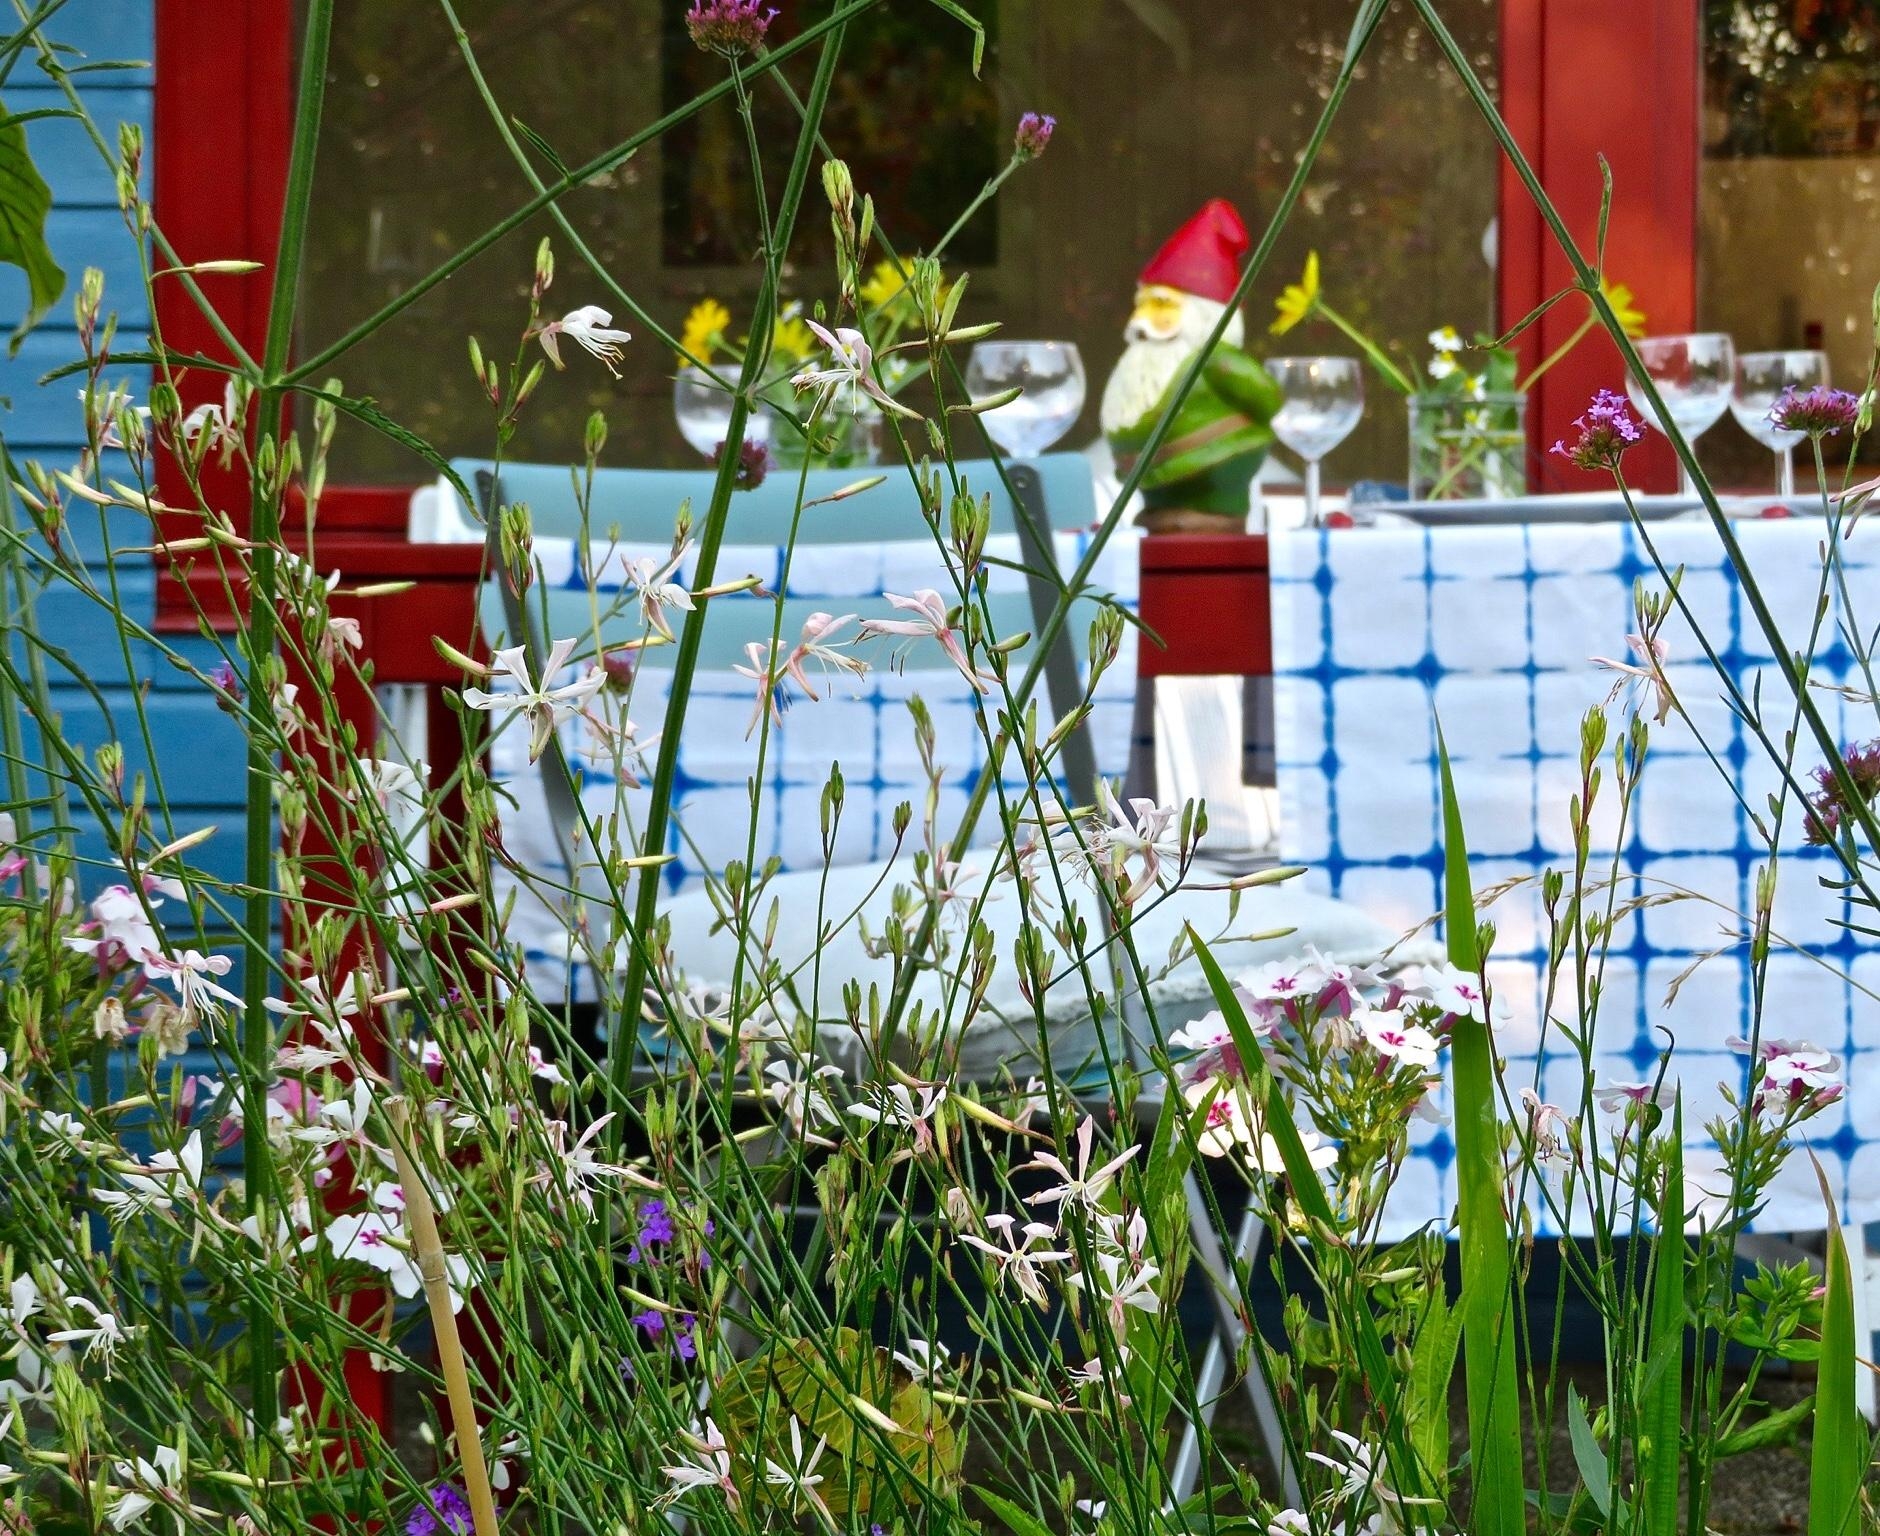 #gartenliebe #garten #laube #prachtkerze #essenimgarten 
Essen im Garten, ein Glas Wein - Sommer! 😄